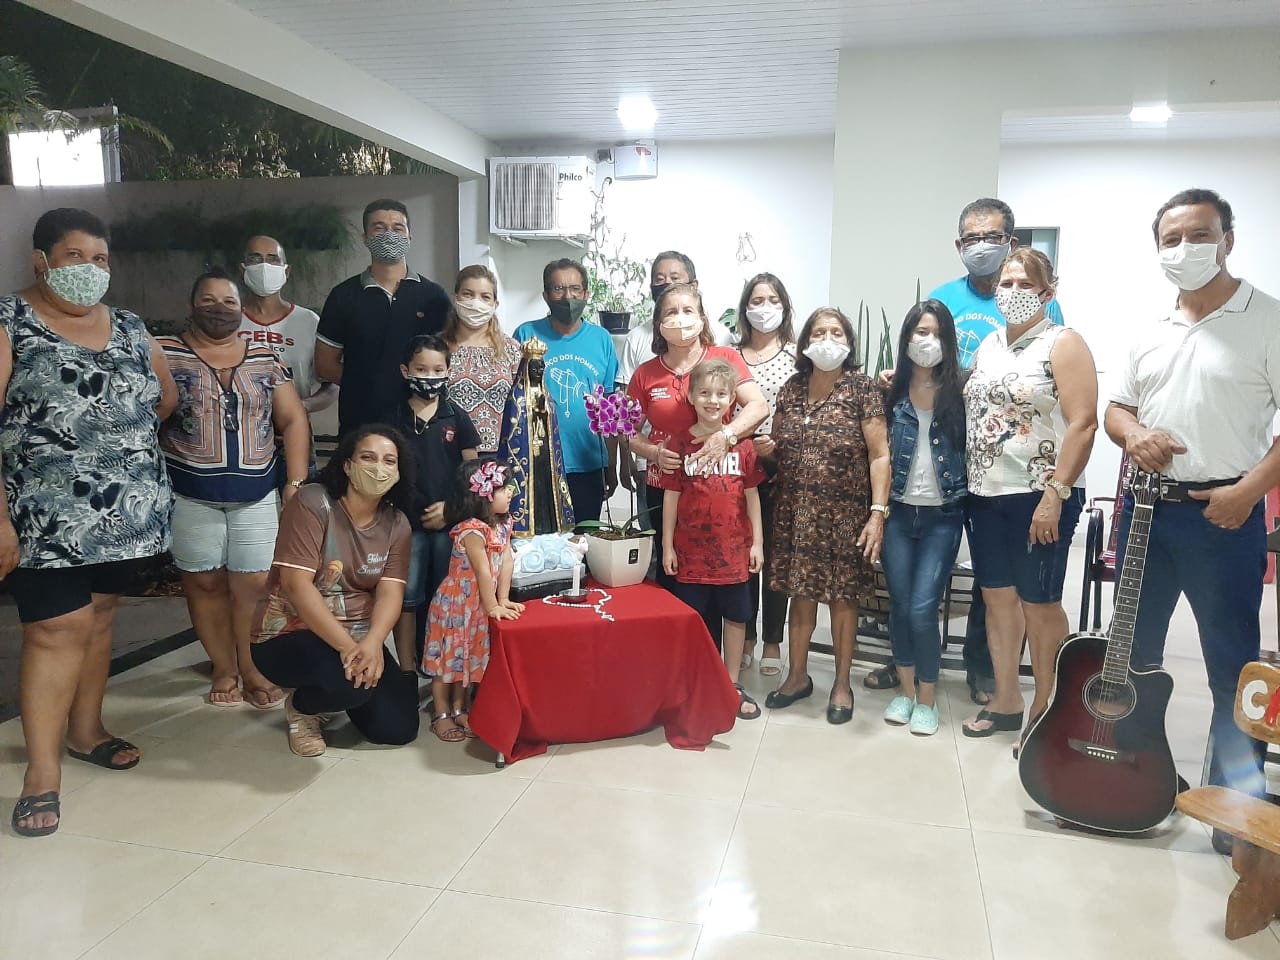 Diocese de Rondonópolis realiza Dia D com Terço Missionário e envio da 6ª carta às Comunidades